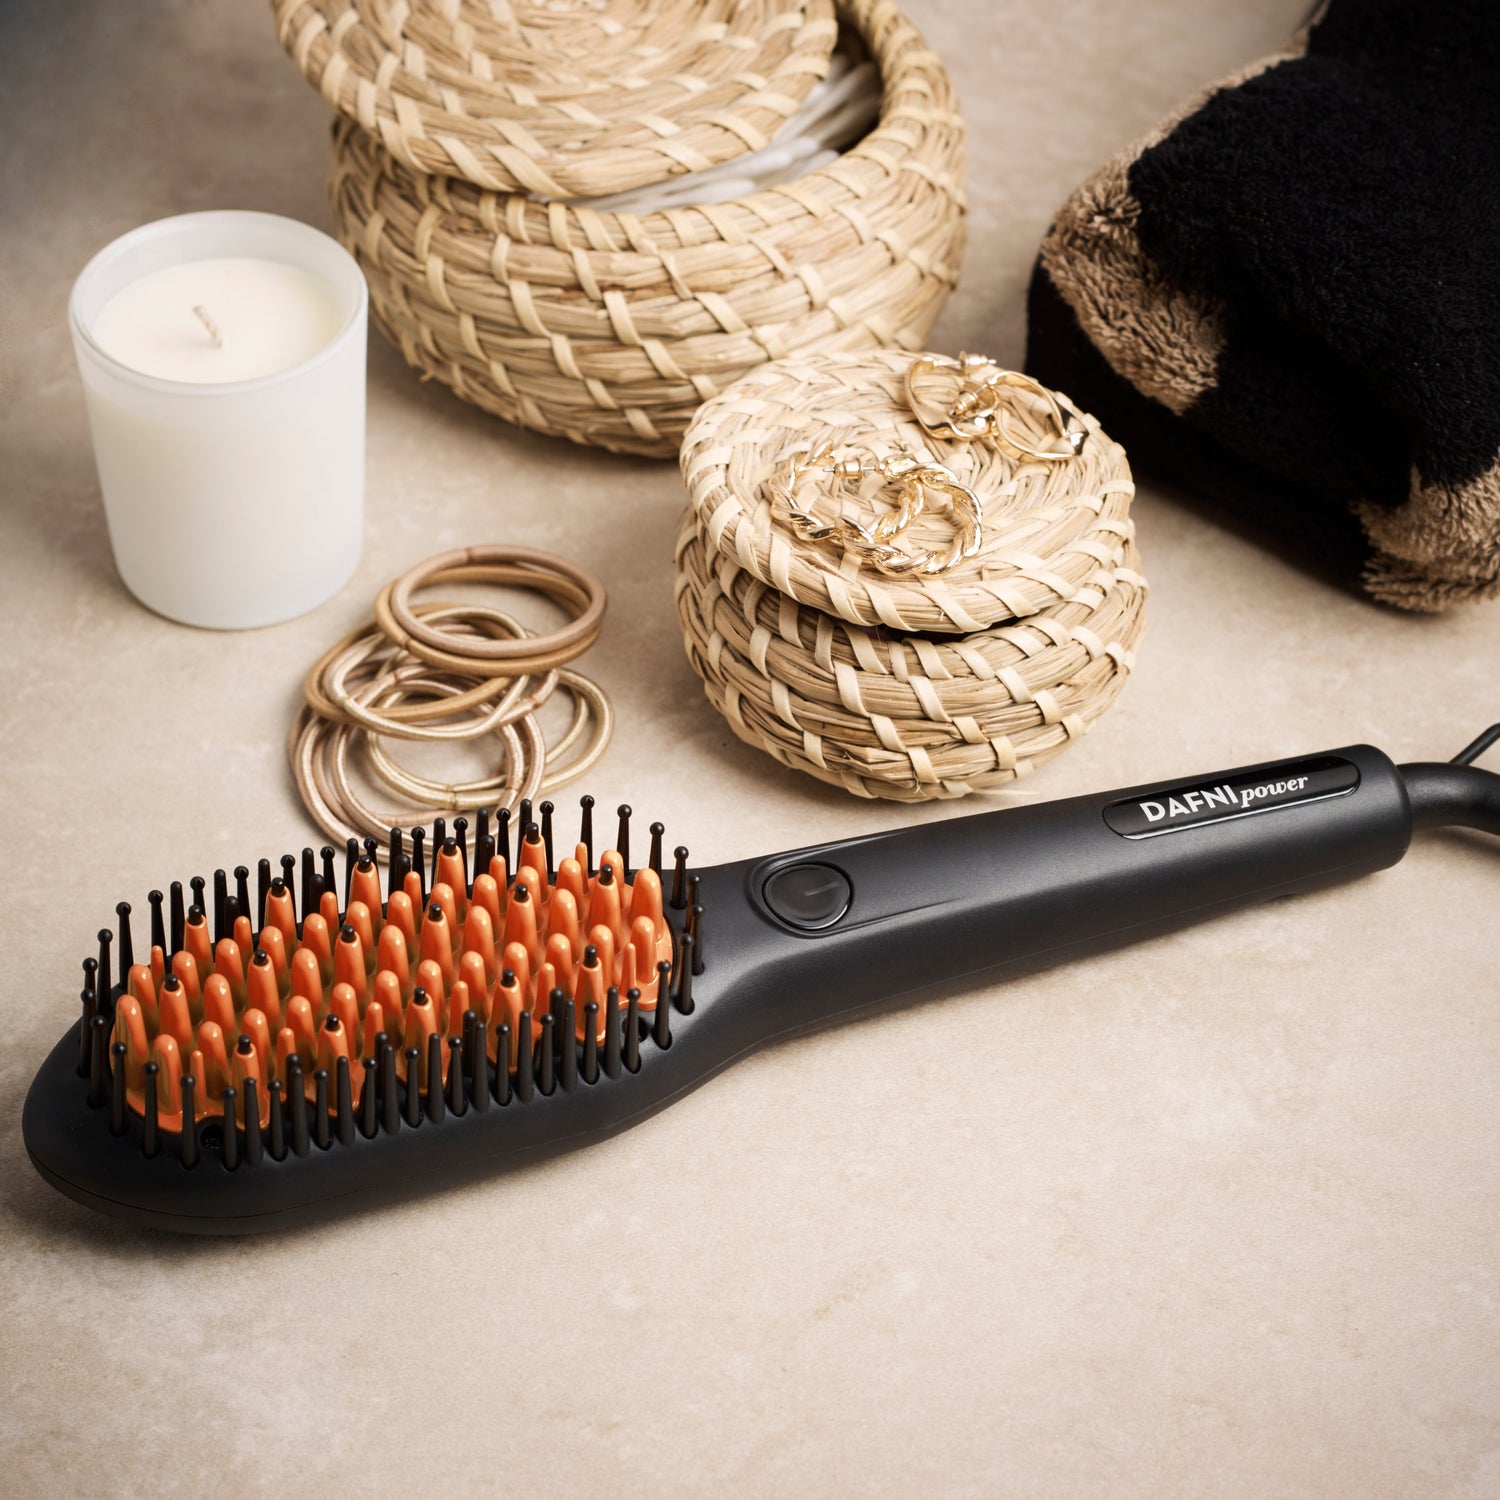 BIBI Ionic Hair Straightener Brush msrp $299.